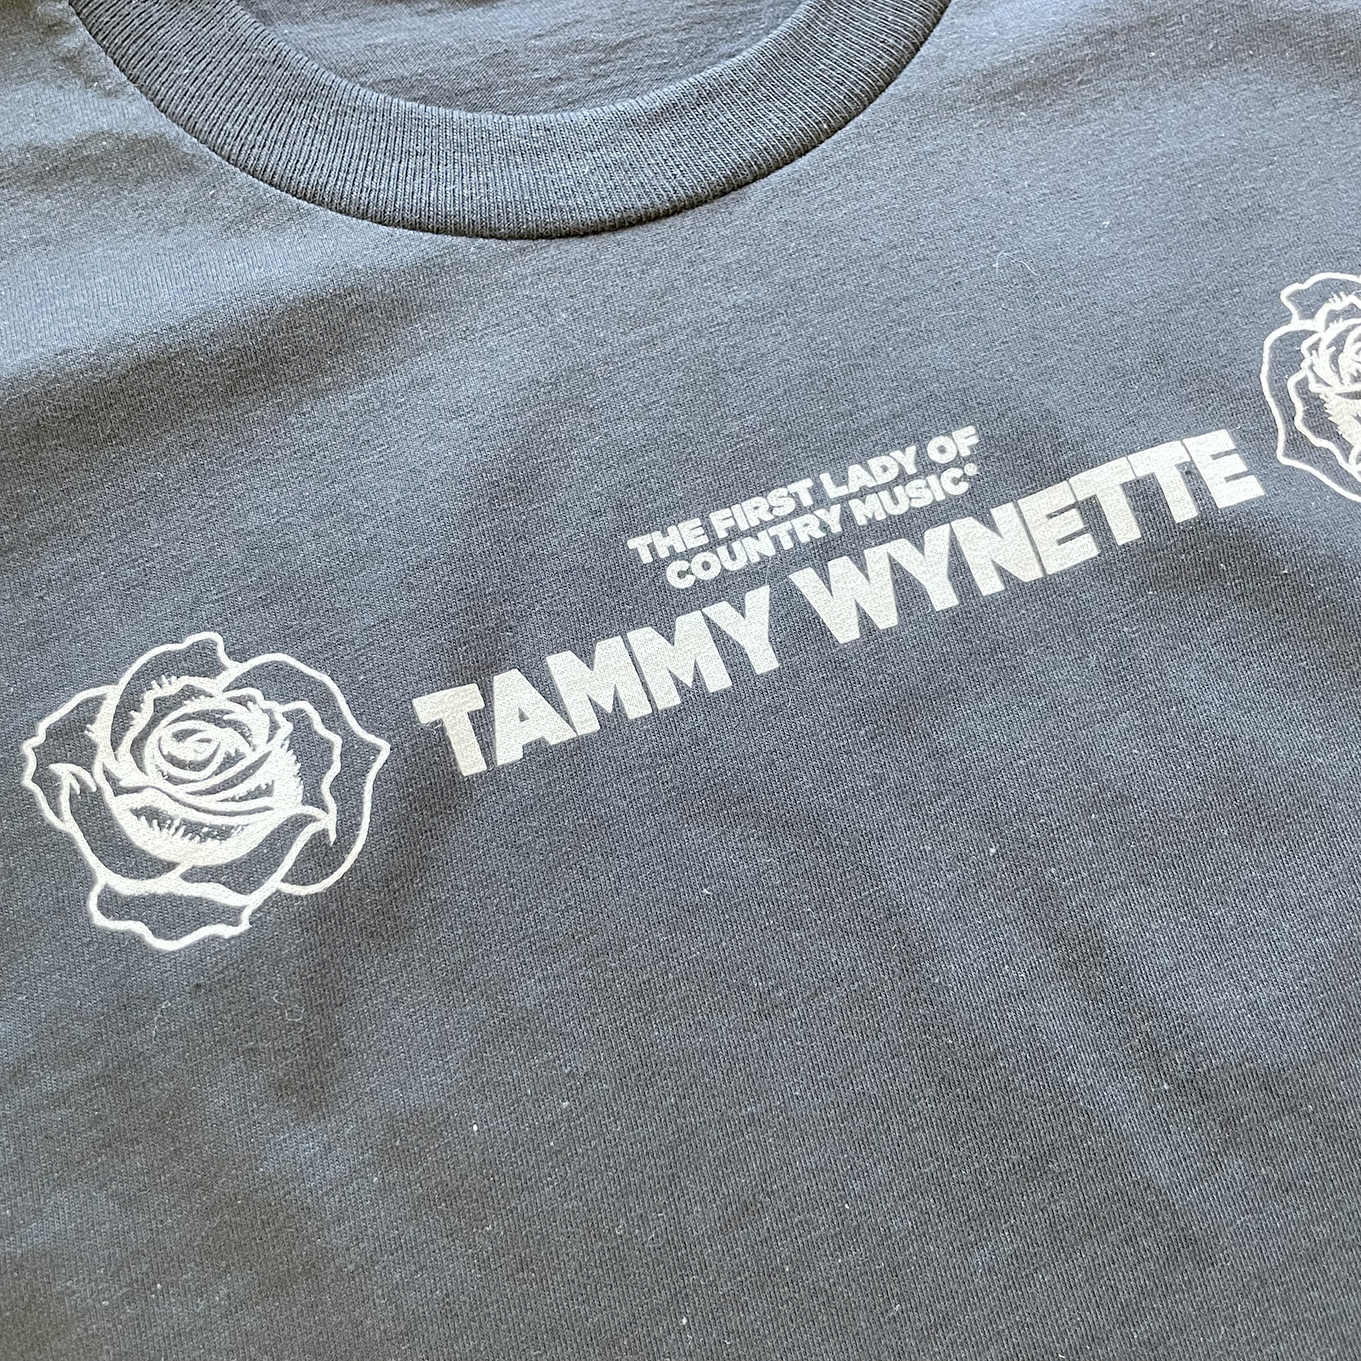 Tammy Wynette Short Sleeve Shirt